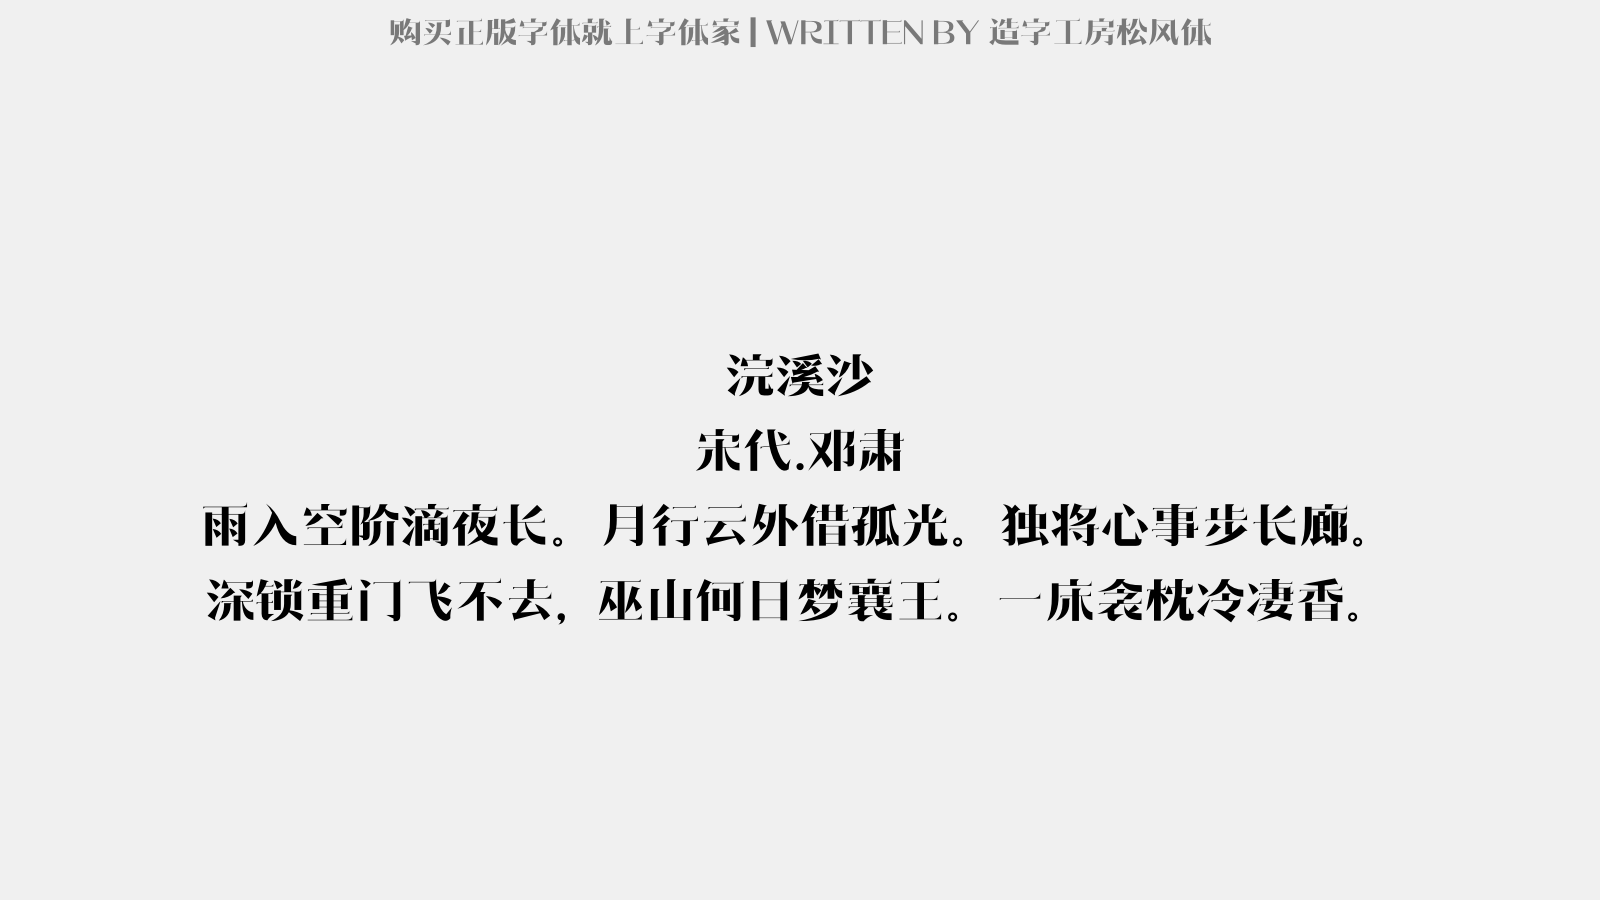 造字工房松风体免费字体下载 中文字体免费下载尽在字体家